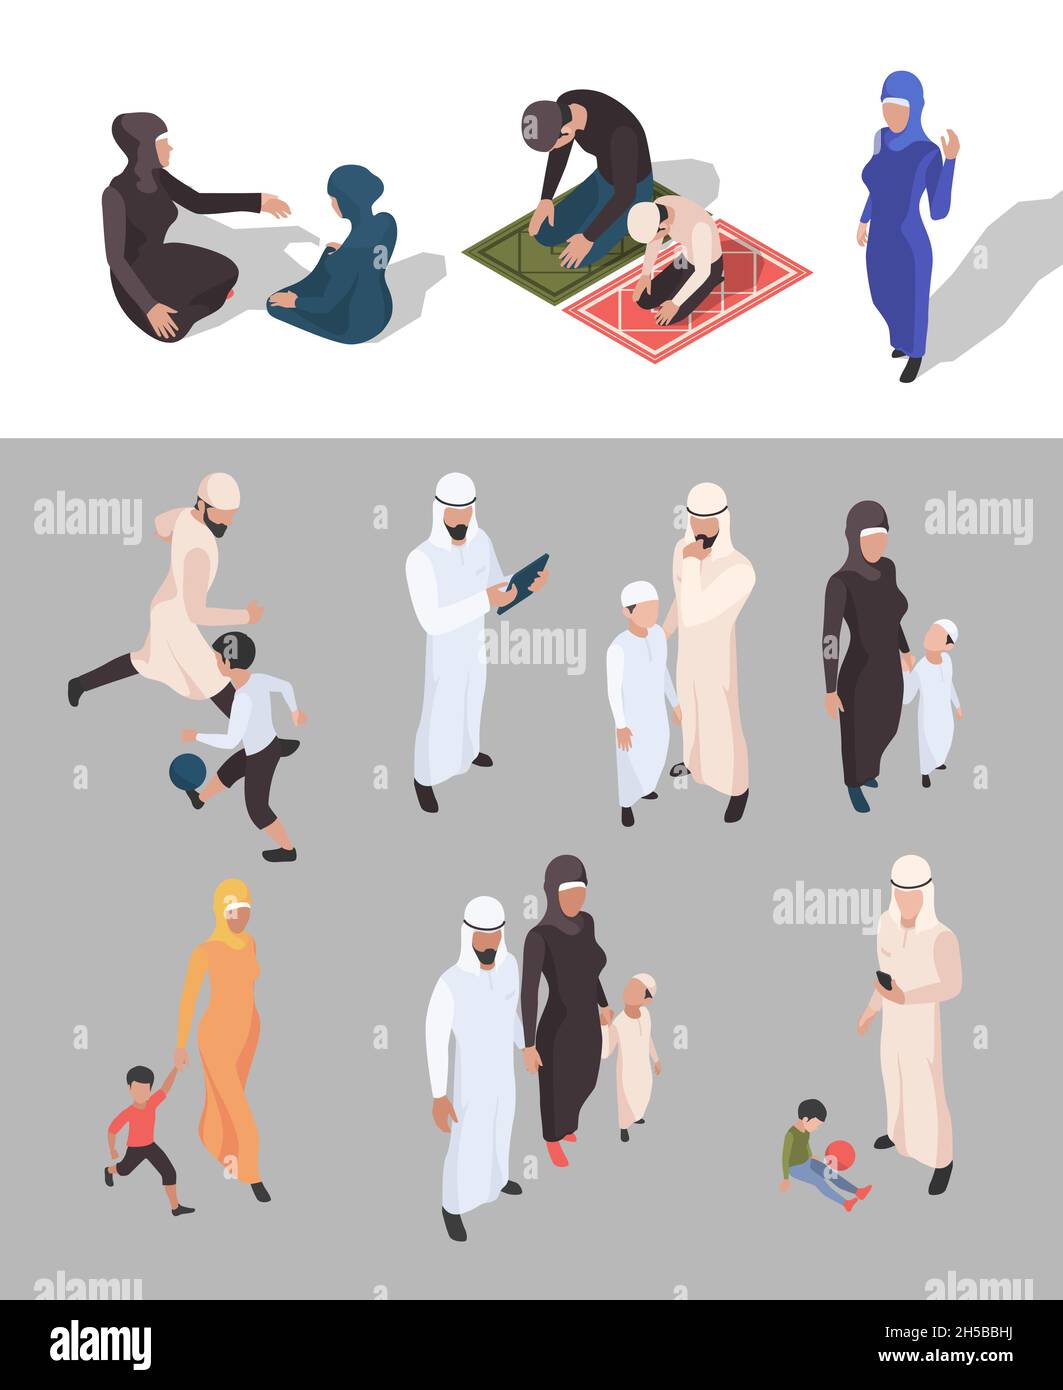 Le peuple musulman.Isométrique arabe personnes traditionnelles grande famille islam garish les personnes vectorielles isolées Illustration de Vecteur